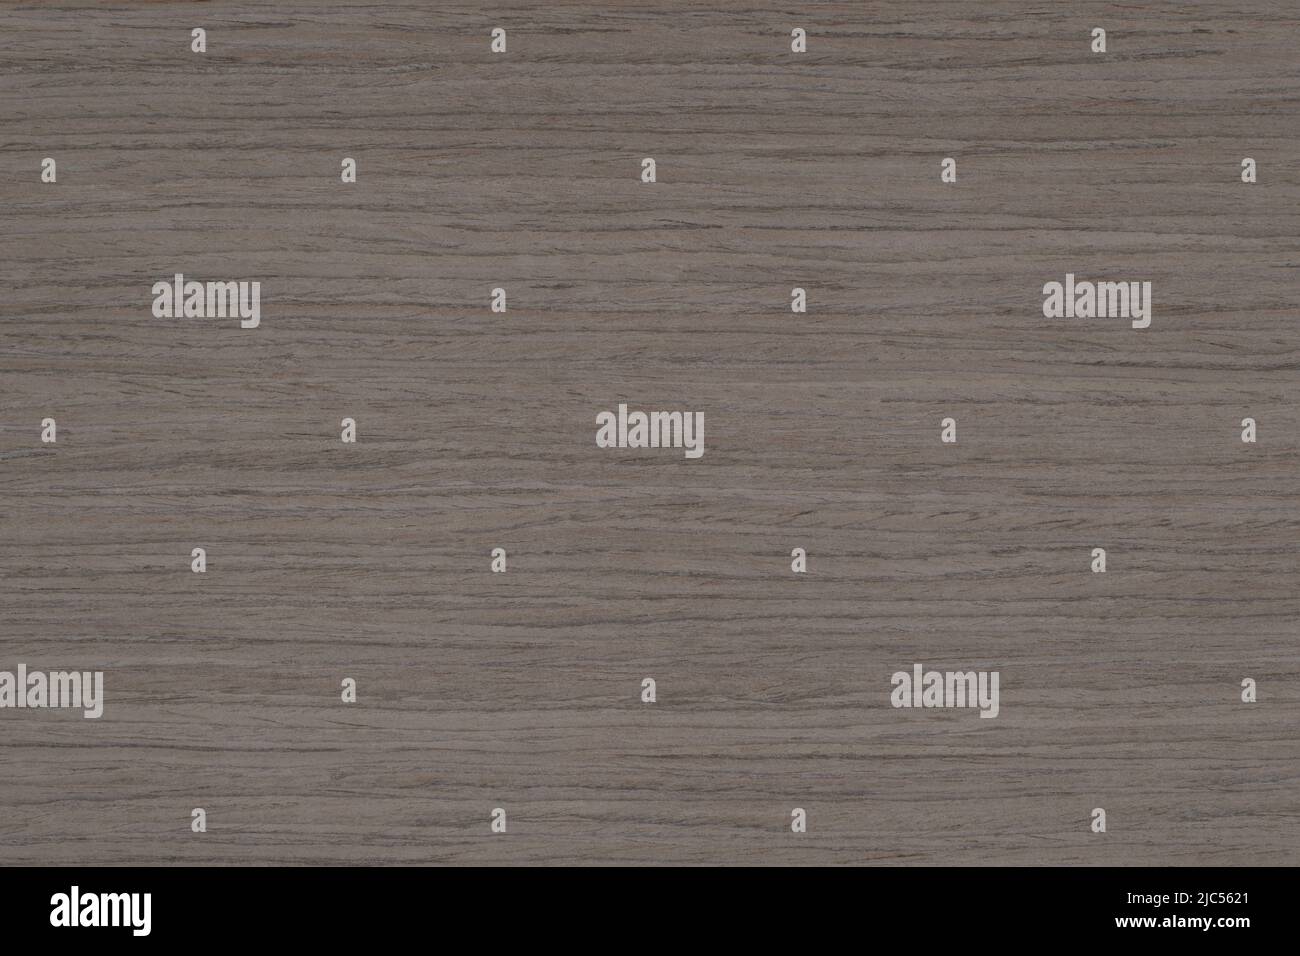 Walnut straight 4 wood panel texture pattern Stock Photo